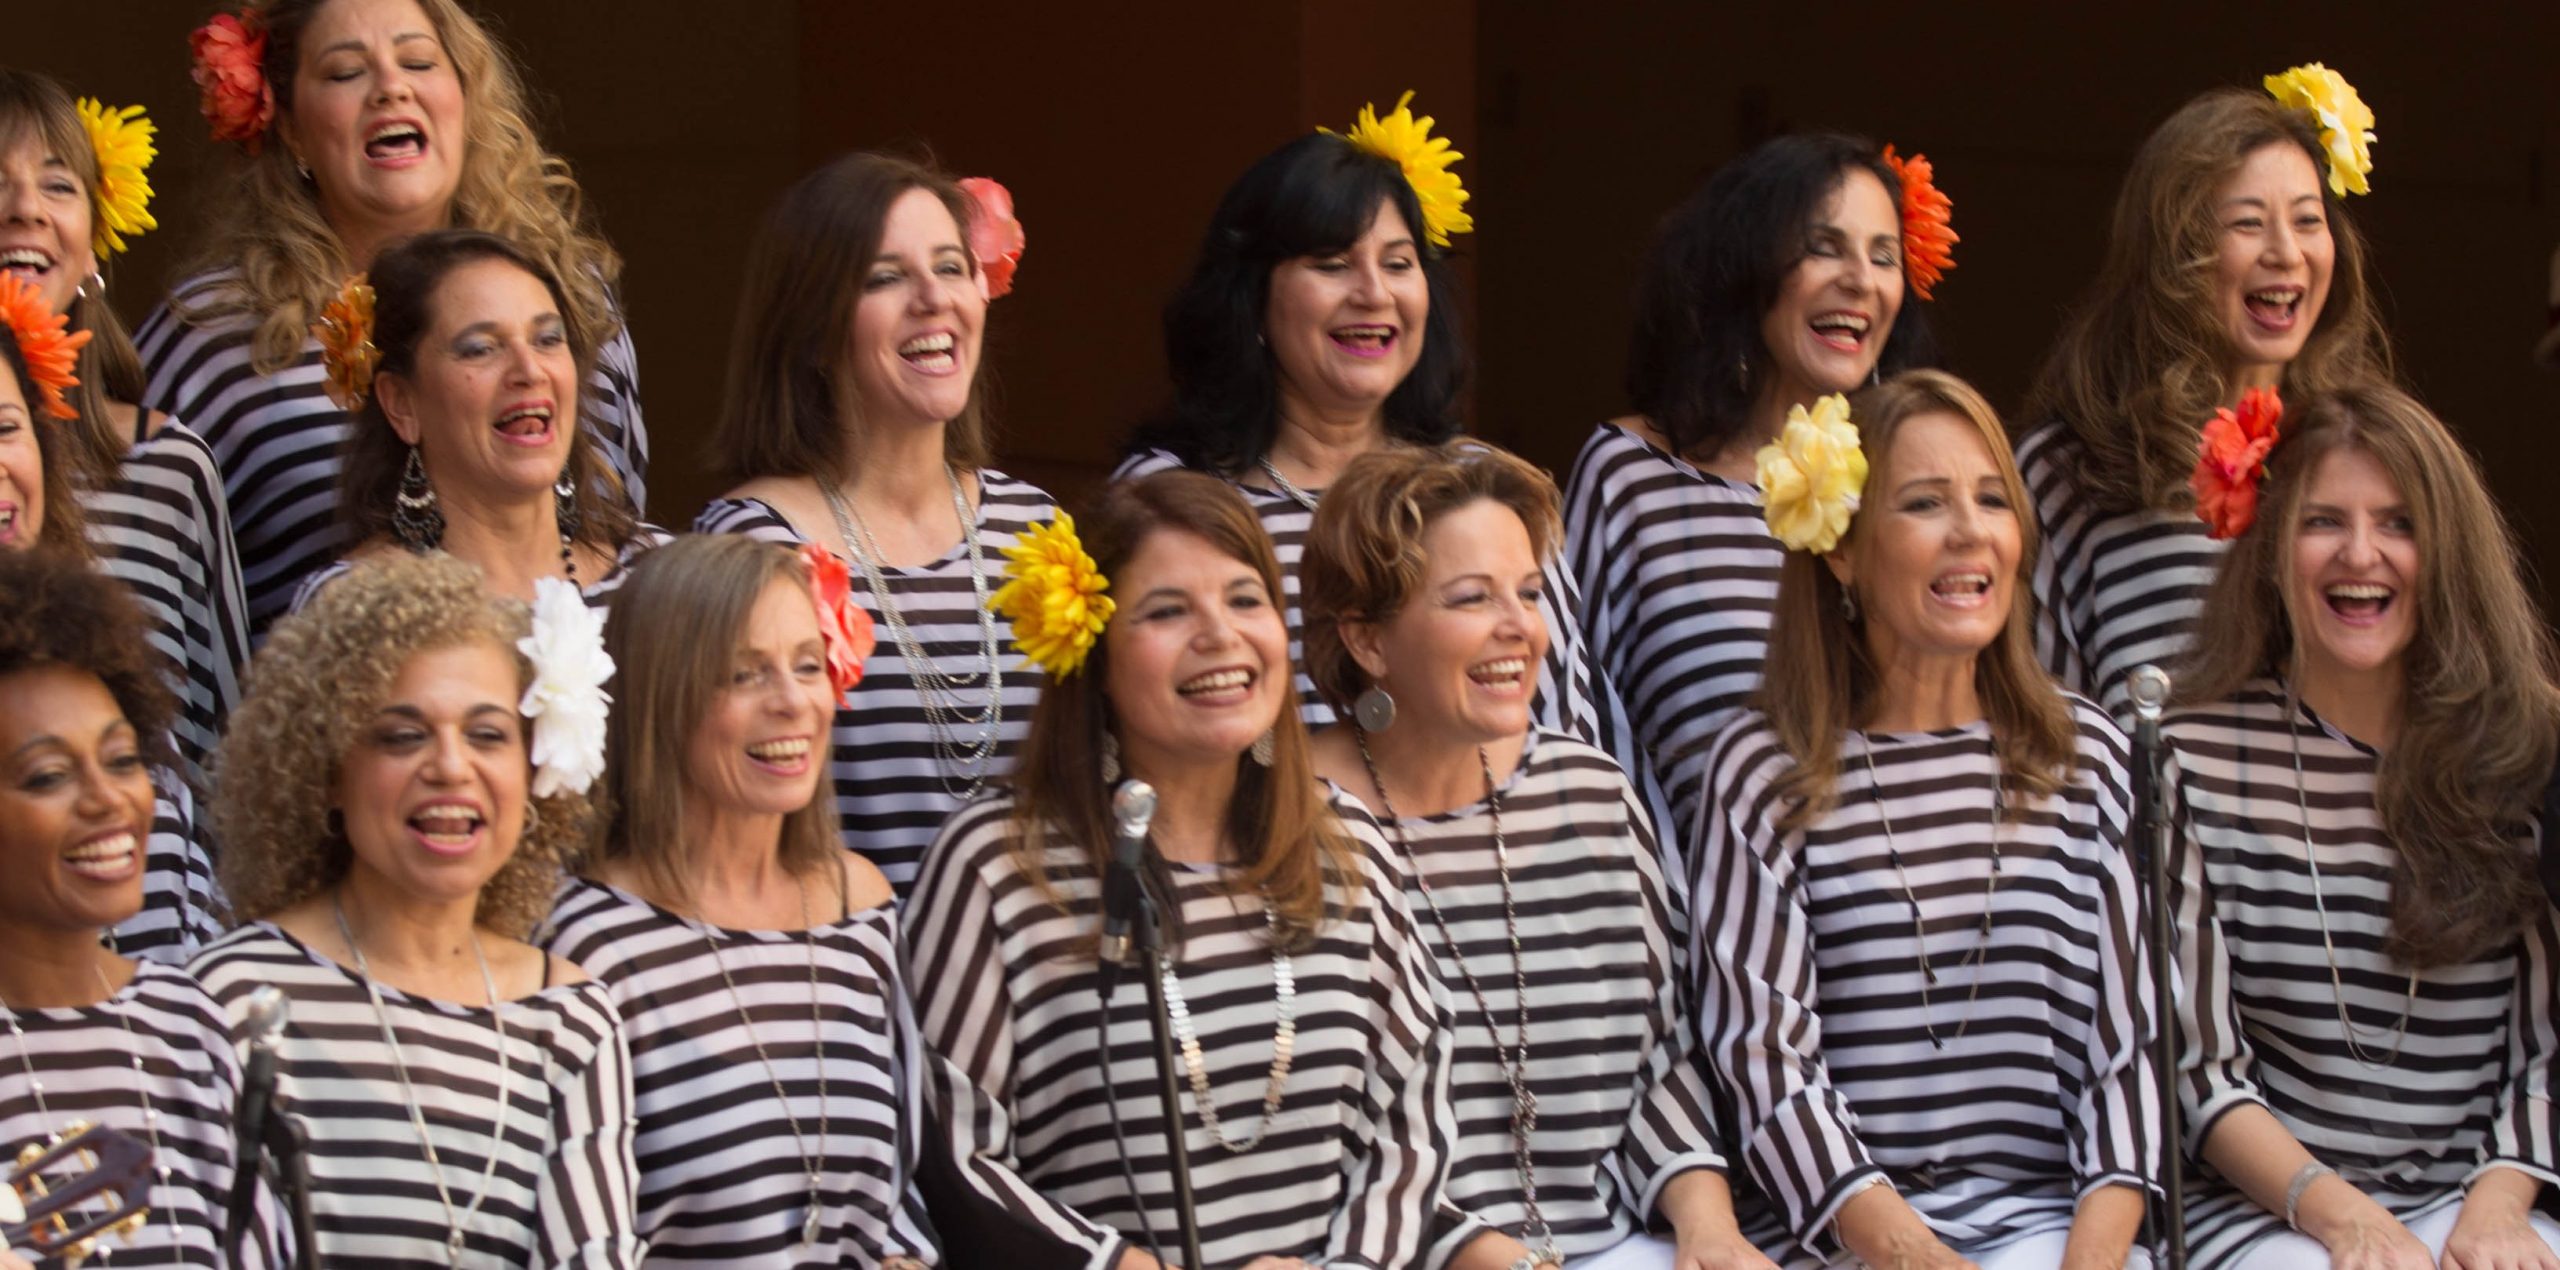 Grupo vocal reúne muheres do Brasil e de outros países para levar música às comunidades (foto: brazilianvoices)